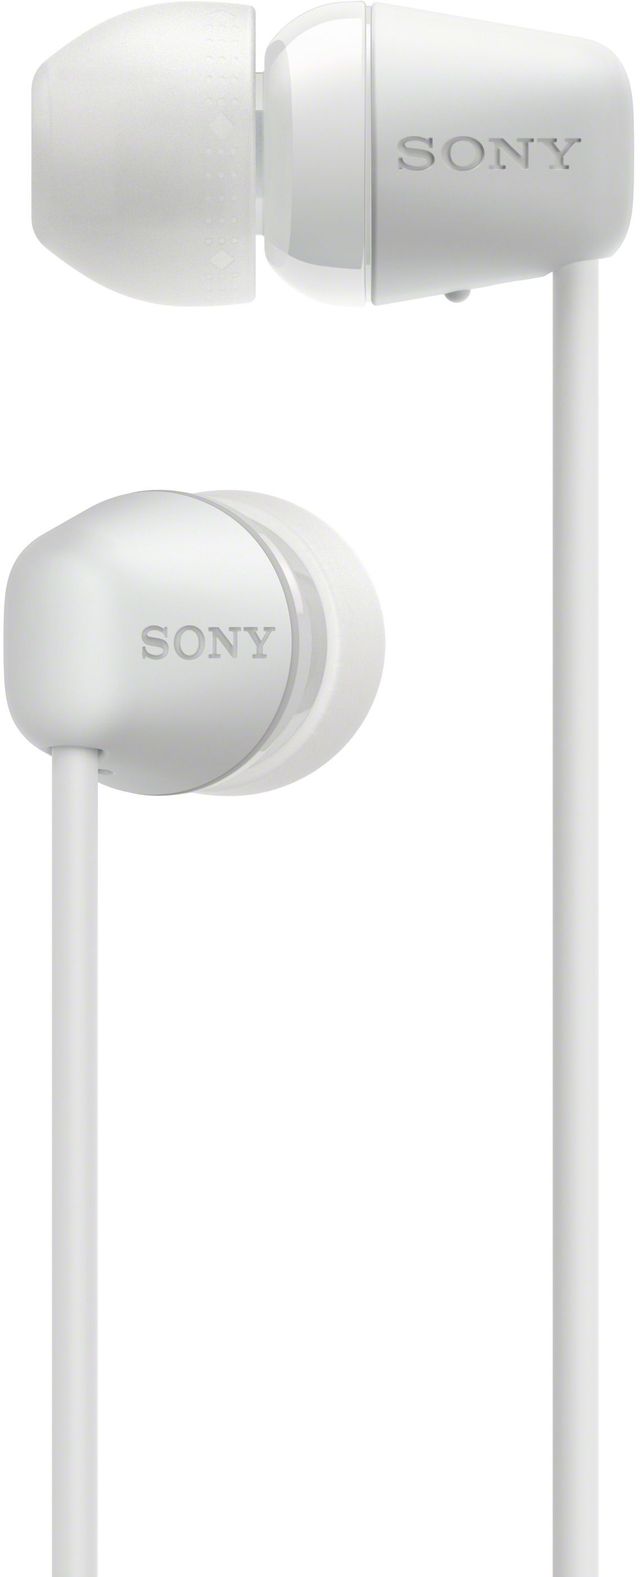 Sony WI-C200 White Wireless In-Ear Headphones 3